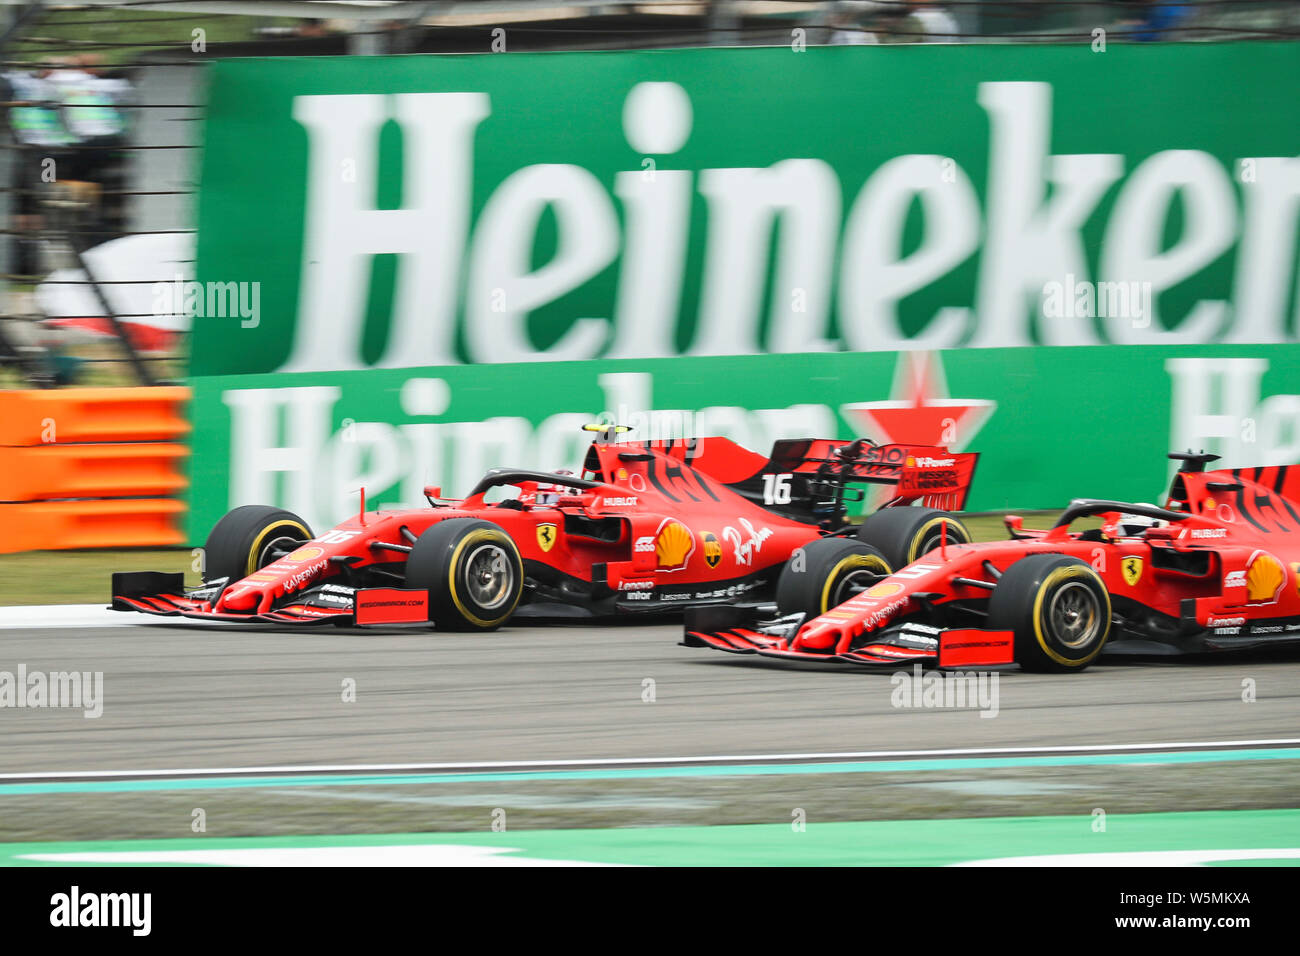 Pilote automobile monégasque Charles Leclerc, à gauche, et l'allemand Sebastian Vettel, pilote de course de la Scuderia Ferrari en compétition au cours de la Heineken Formule 1 Banque D'Images